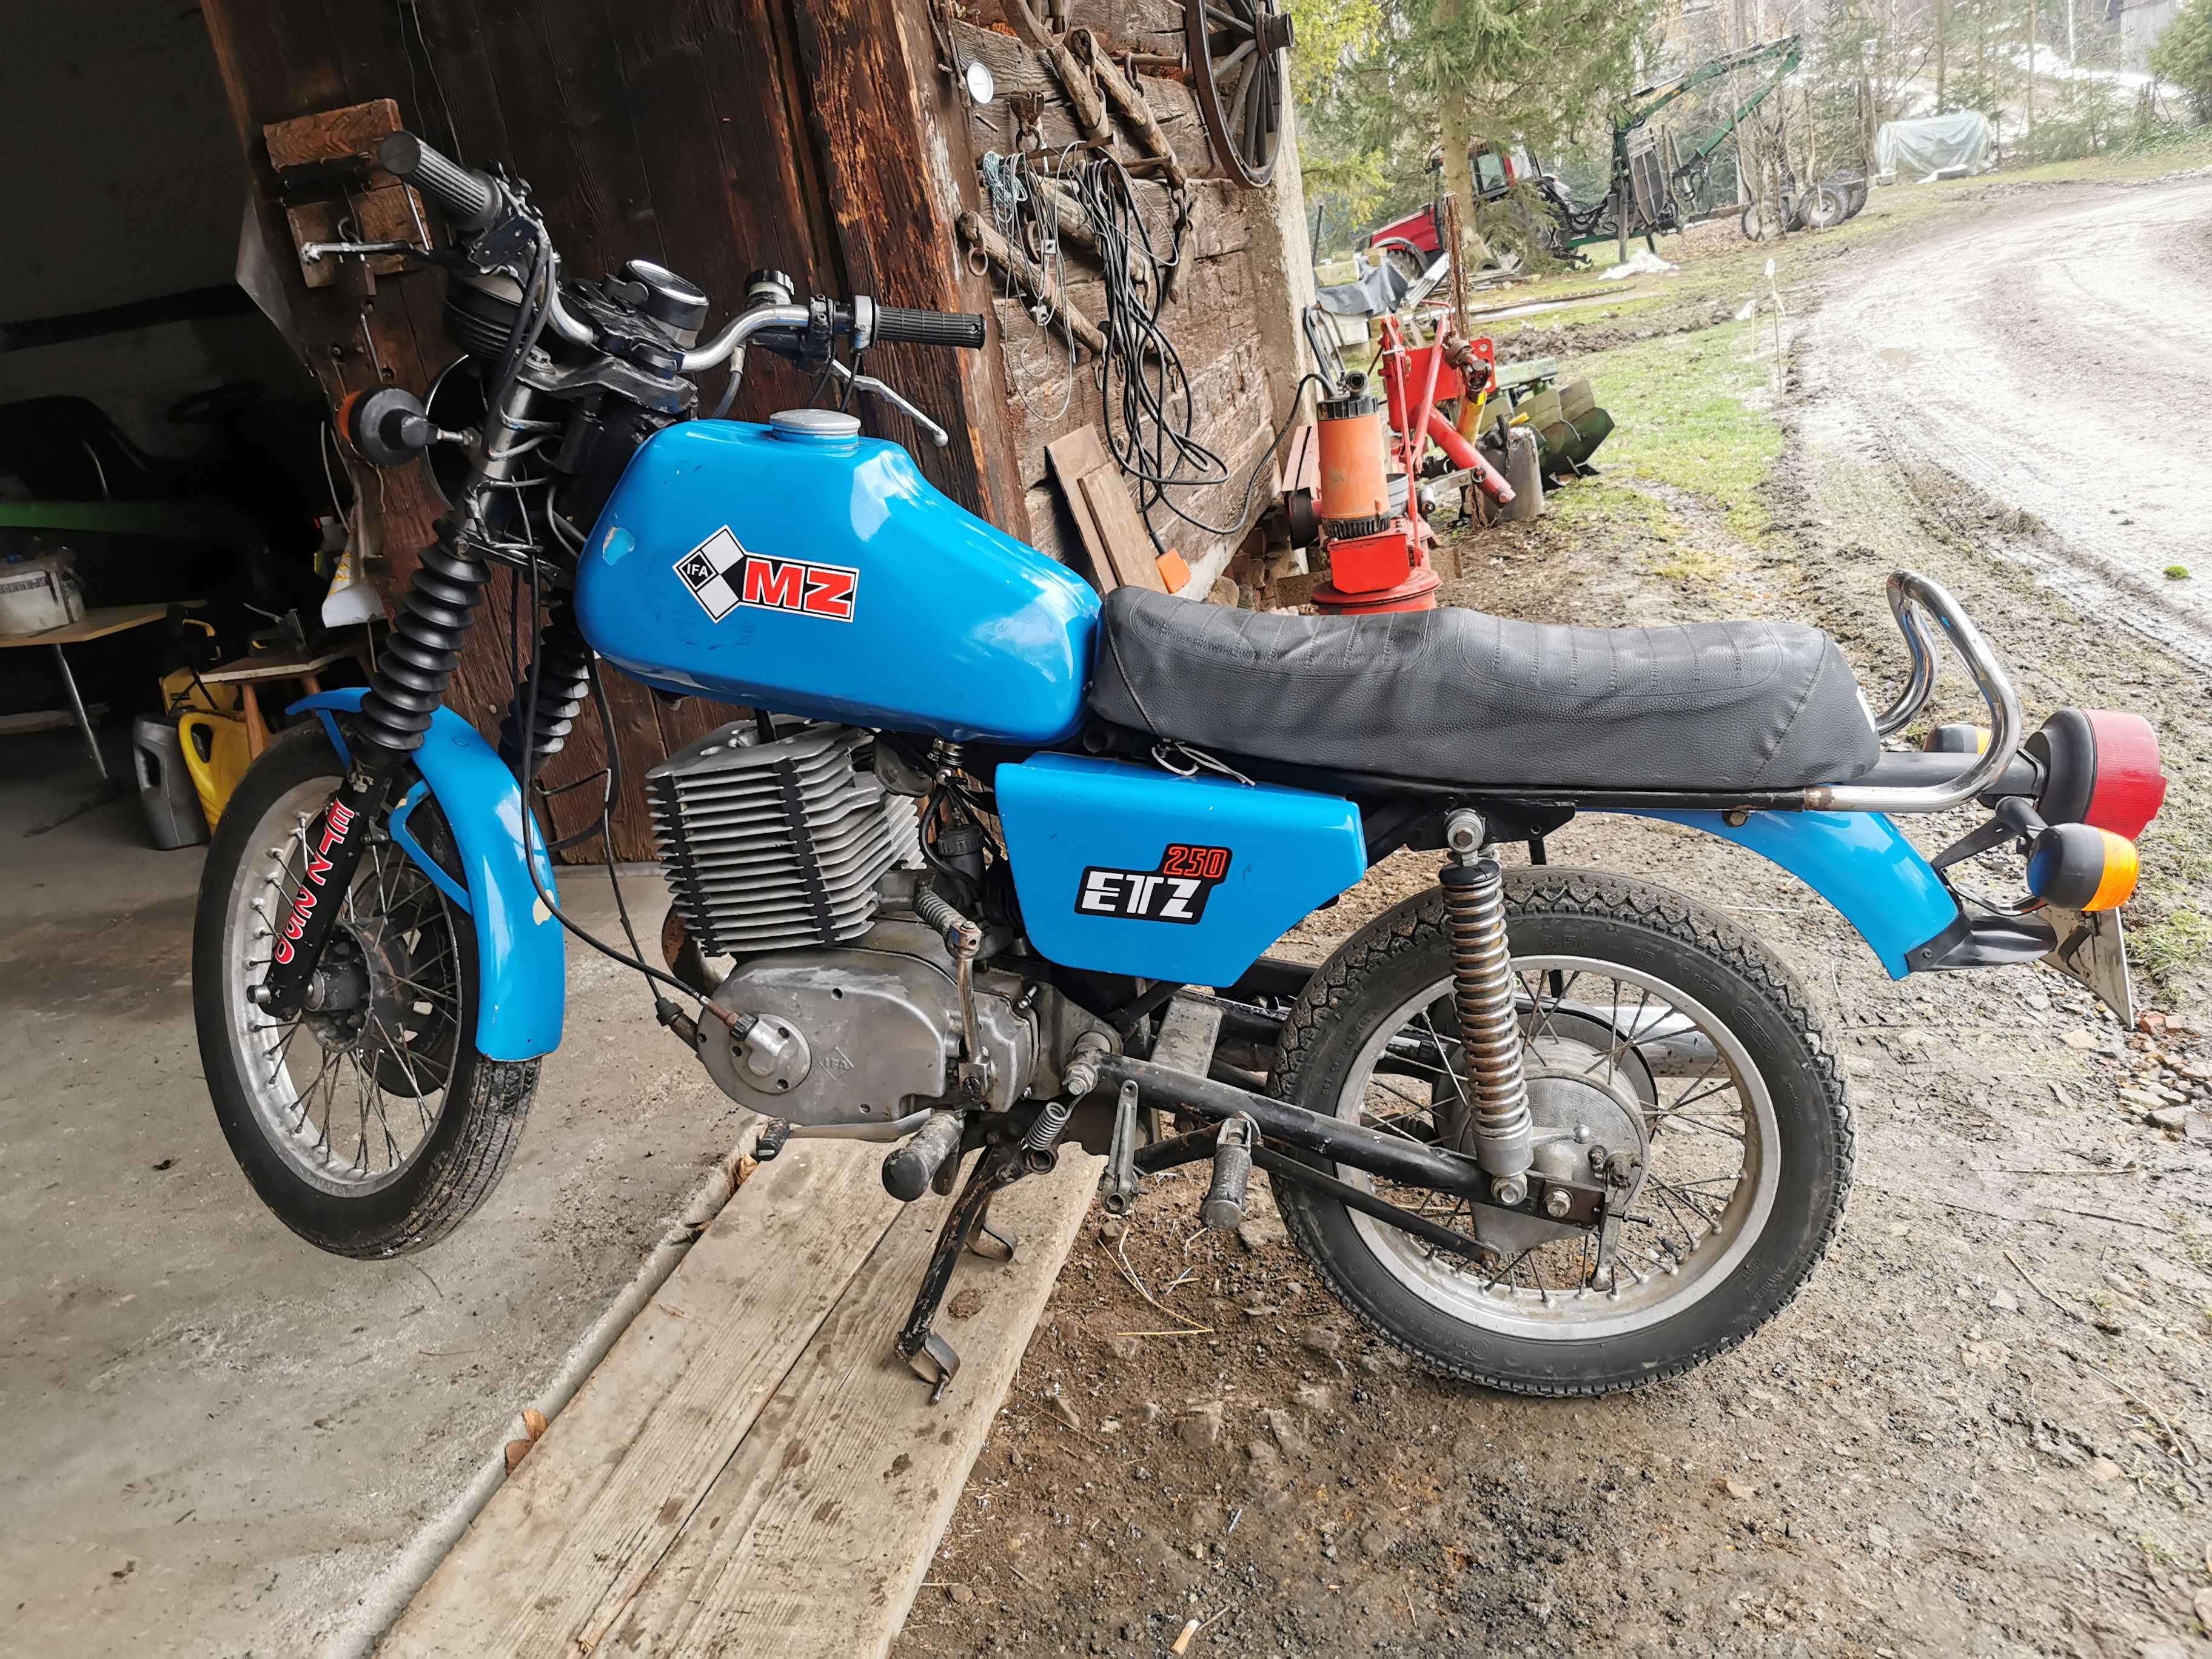 MZ ETZ 250 motocykl rok 1987